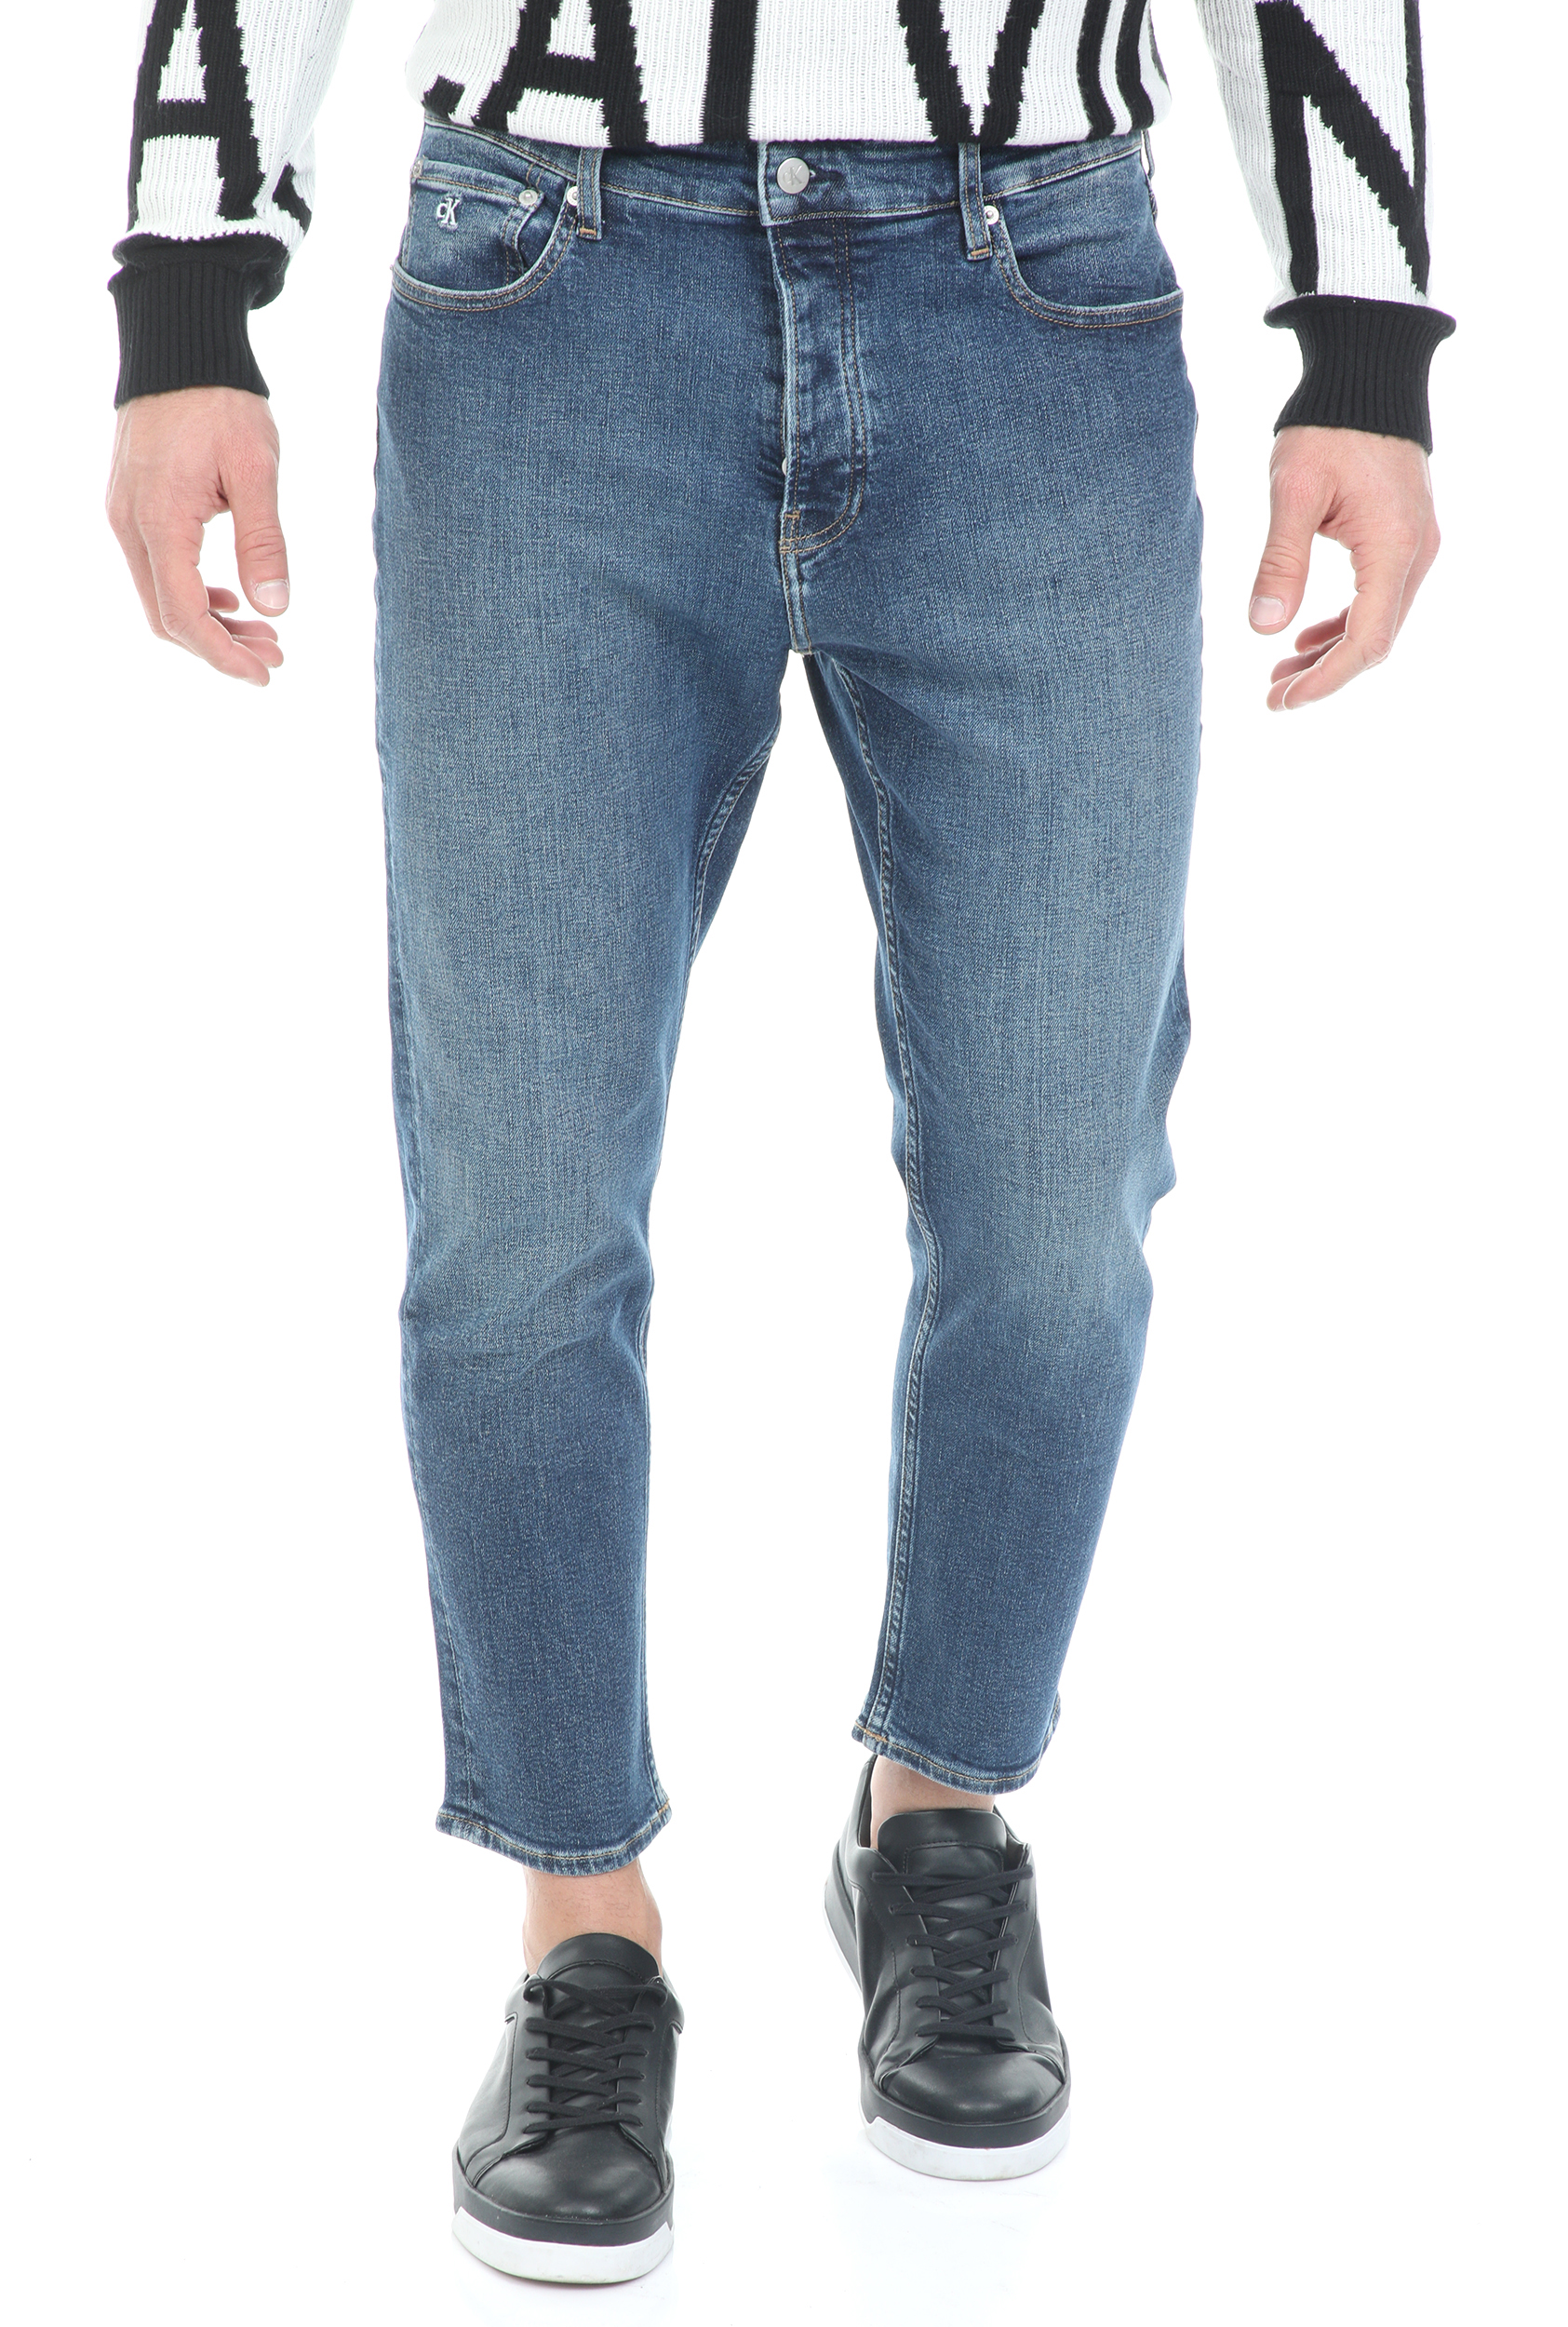 Ανδρικά/Ρούχα/Τζίν/Loose CALVIN KLEIN JEANS - Ανδρικό jean παντελόνι CALVIN KLEIN JEANS DAD μπλε